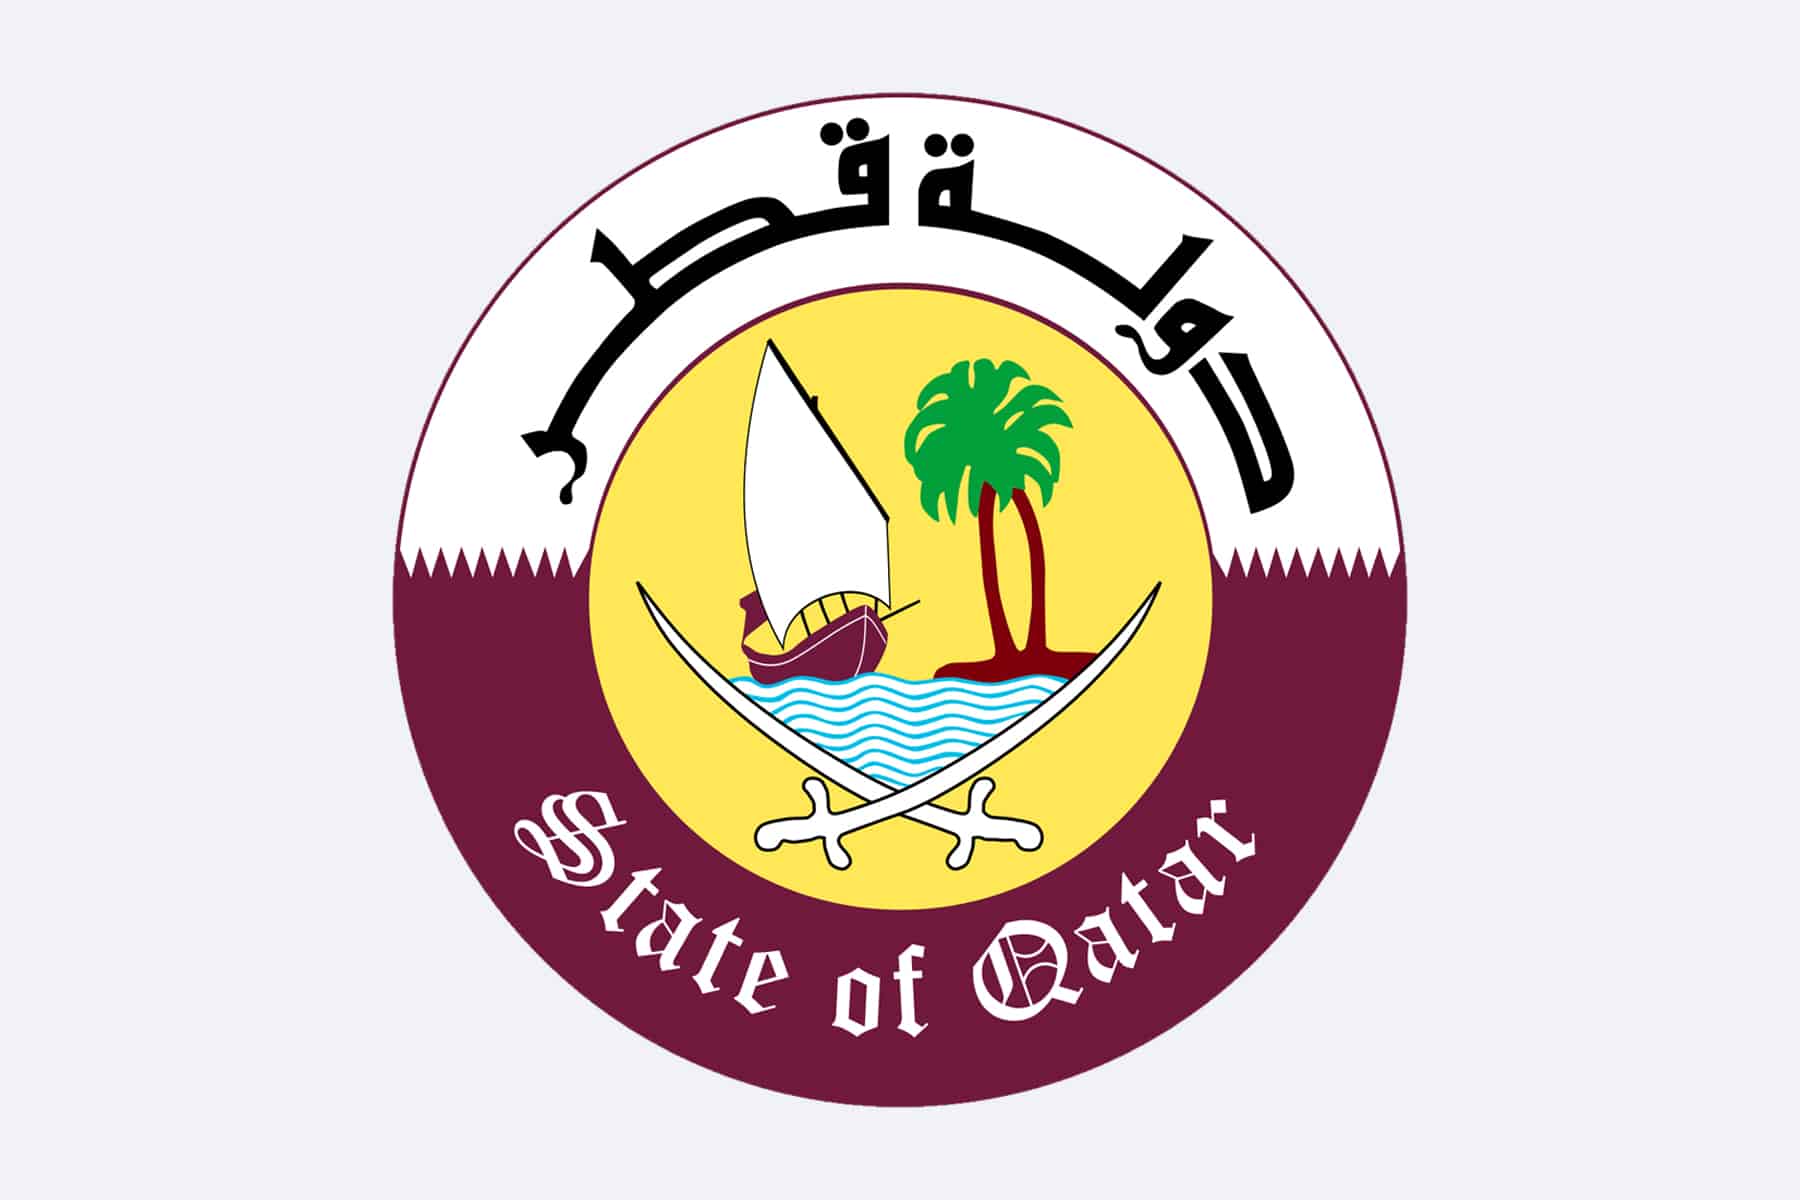 ماذا عن الشعار الجديد لدولة قطر، والمعاني التي يعكسها